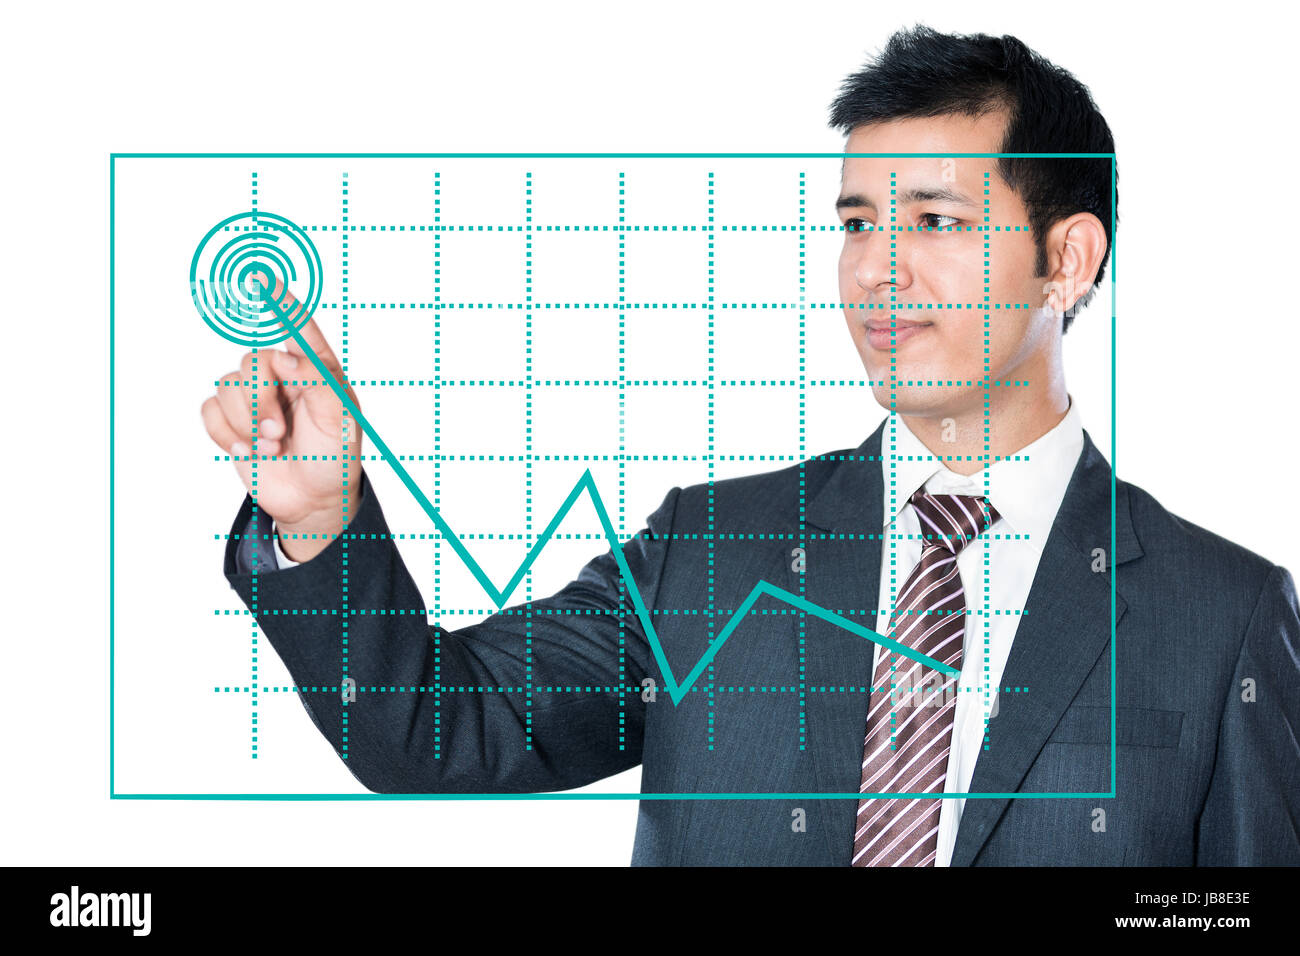 1 l'homme d'affaires de toucher l'écran numérique graphique stock market Banque D'Images